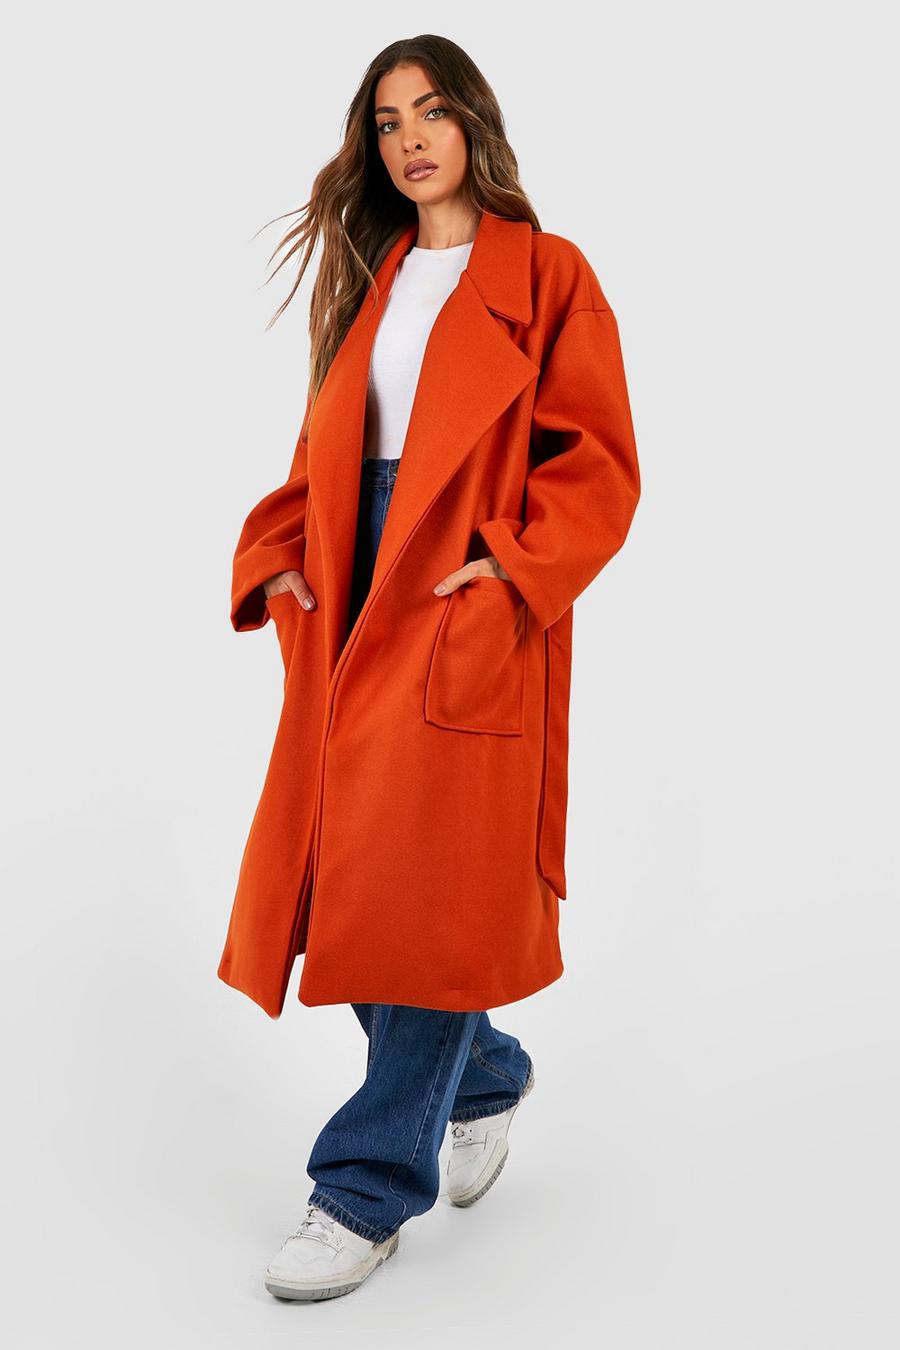 Mantel in Wolloptik mit Taschen-Detail und Gürtel, Orange